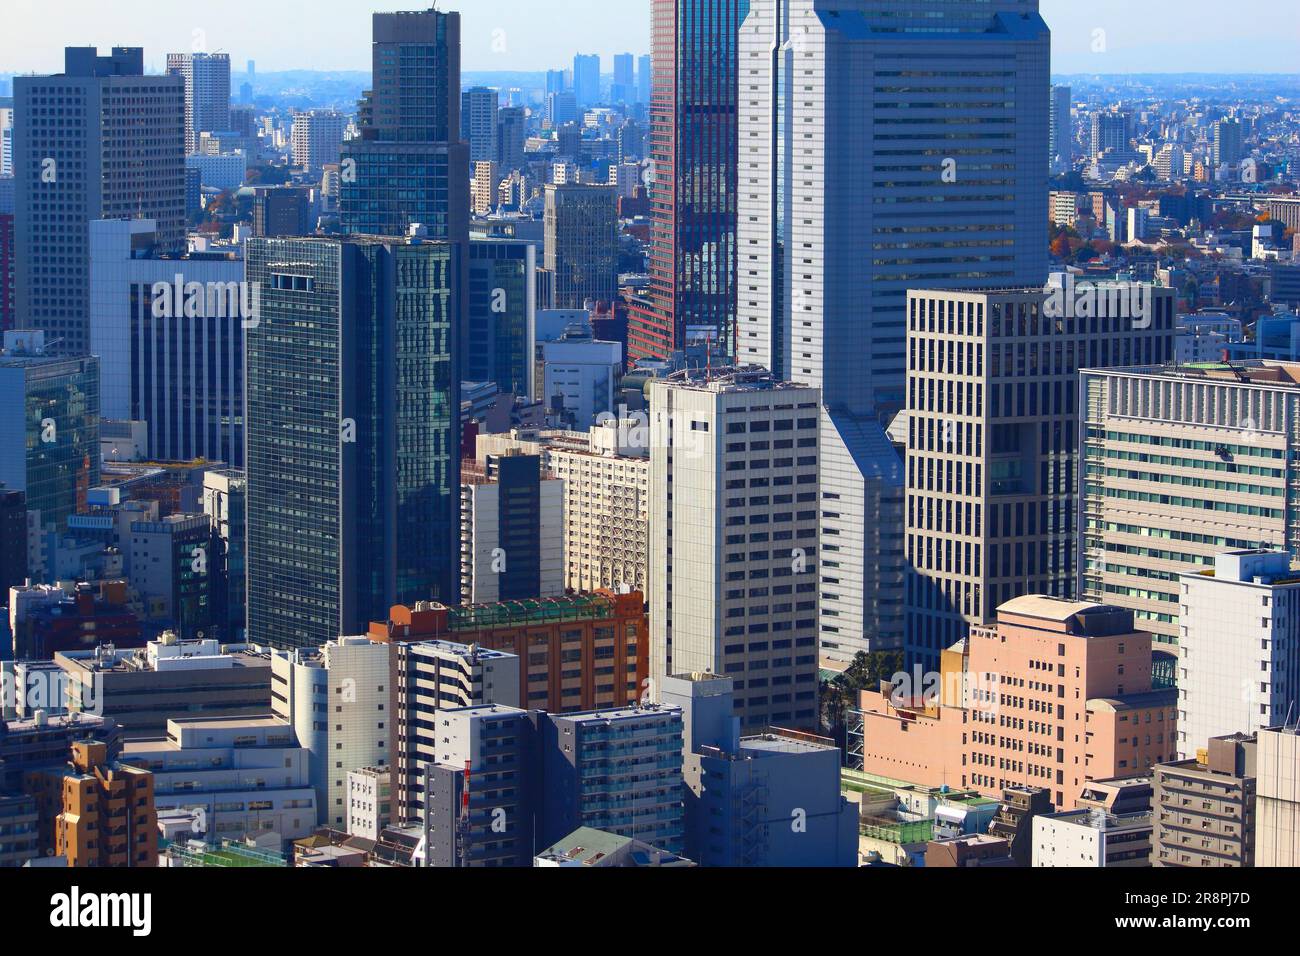 Tokyo city aerial view. Shiba district in Minato Ward. Stock Photo